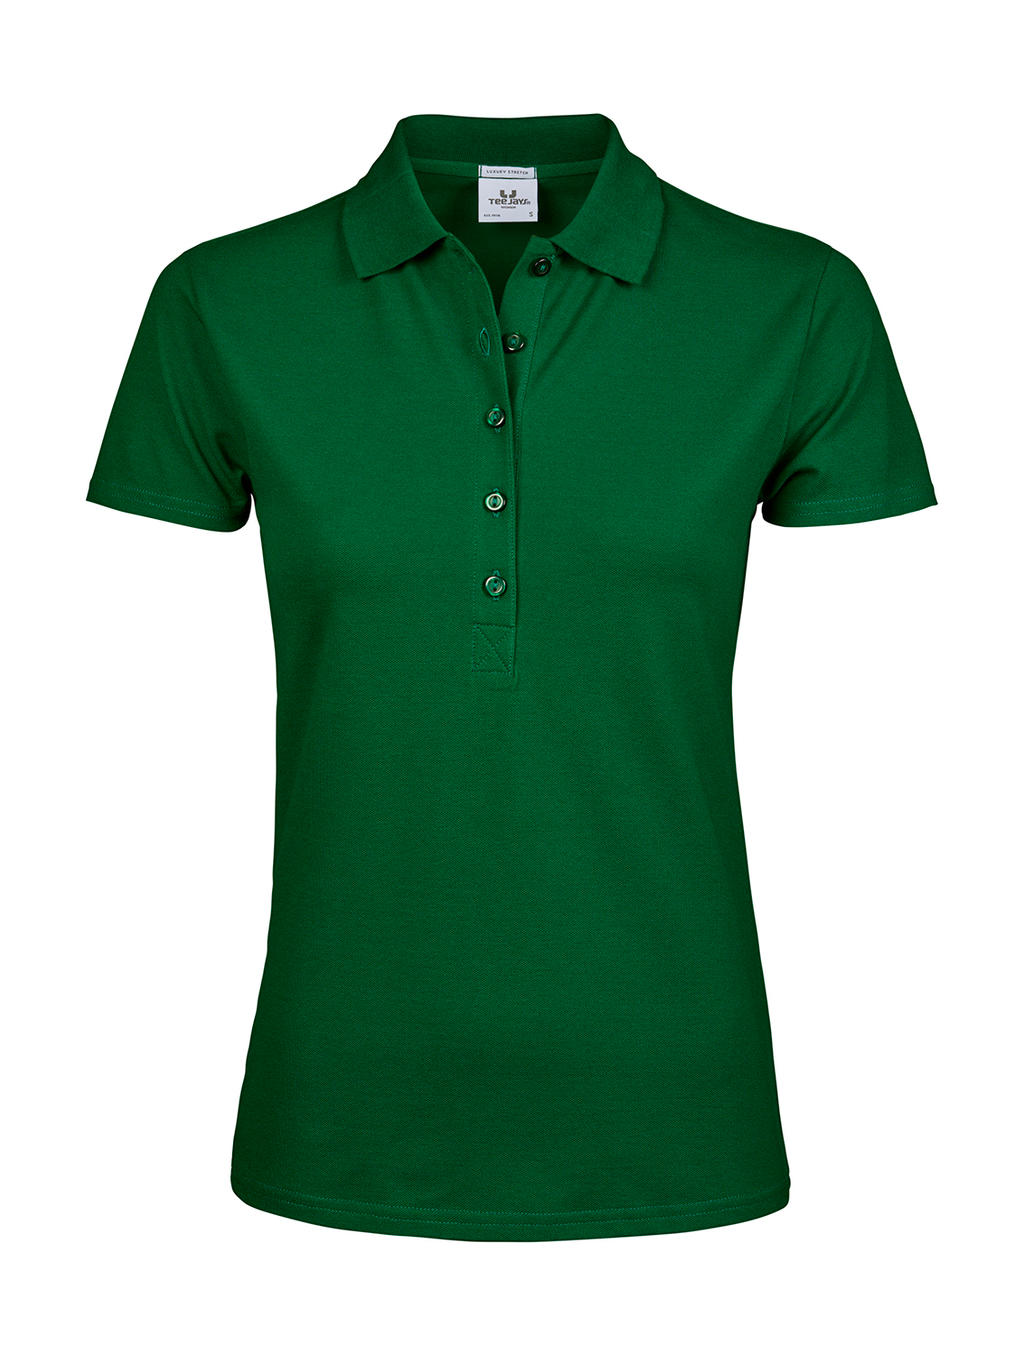 Polokošile dámská Tee Jays Luxury Stretch - zelená, XL